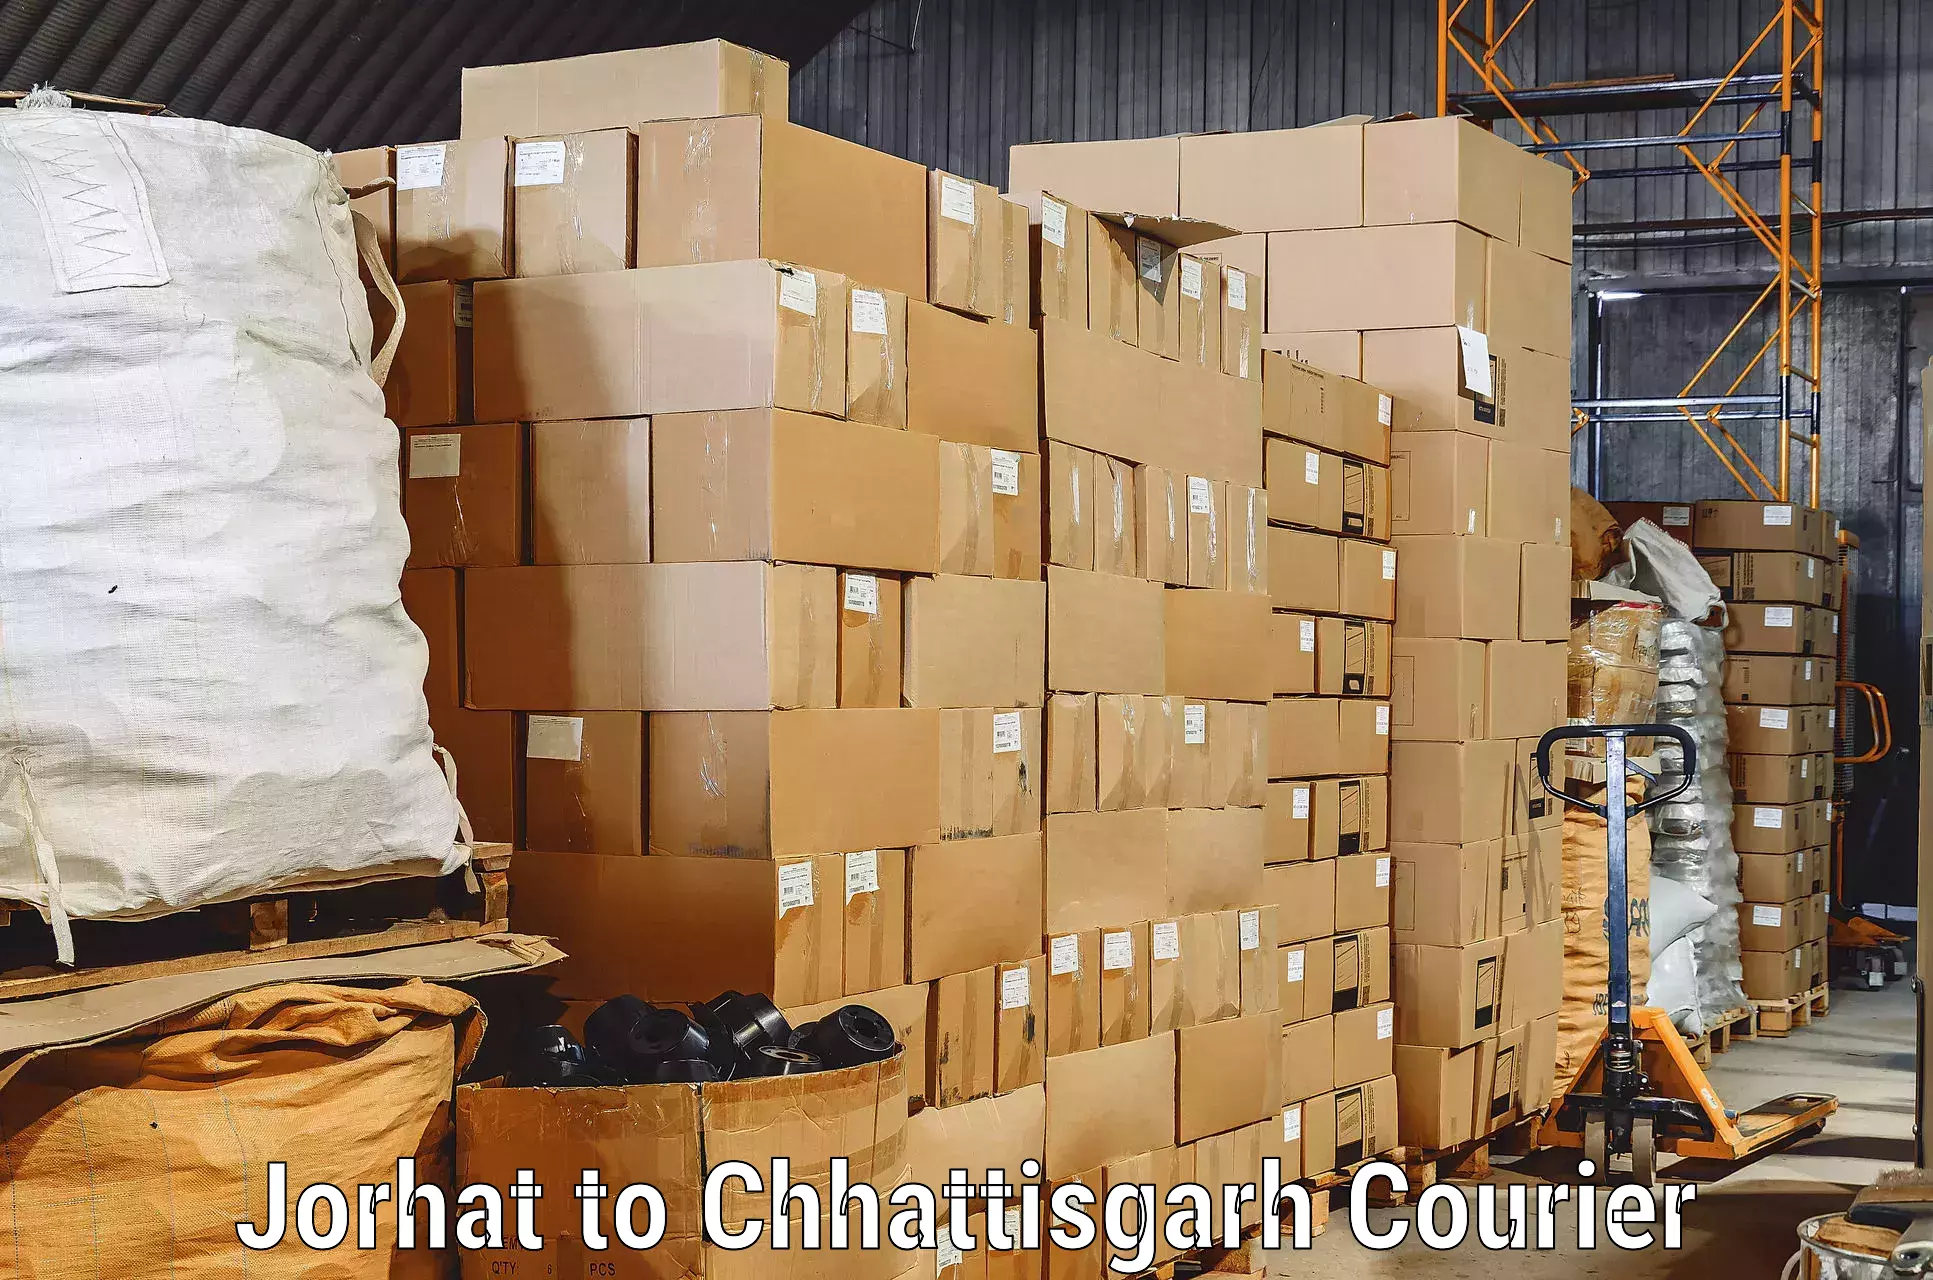 Hassle-free relocation Jorhat to Raigarh Chhattisgarh